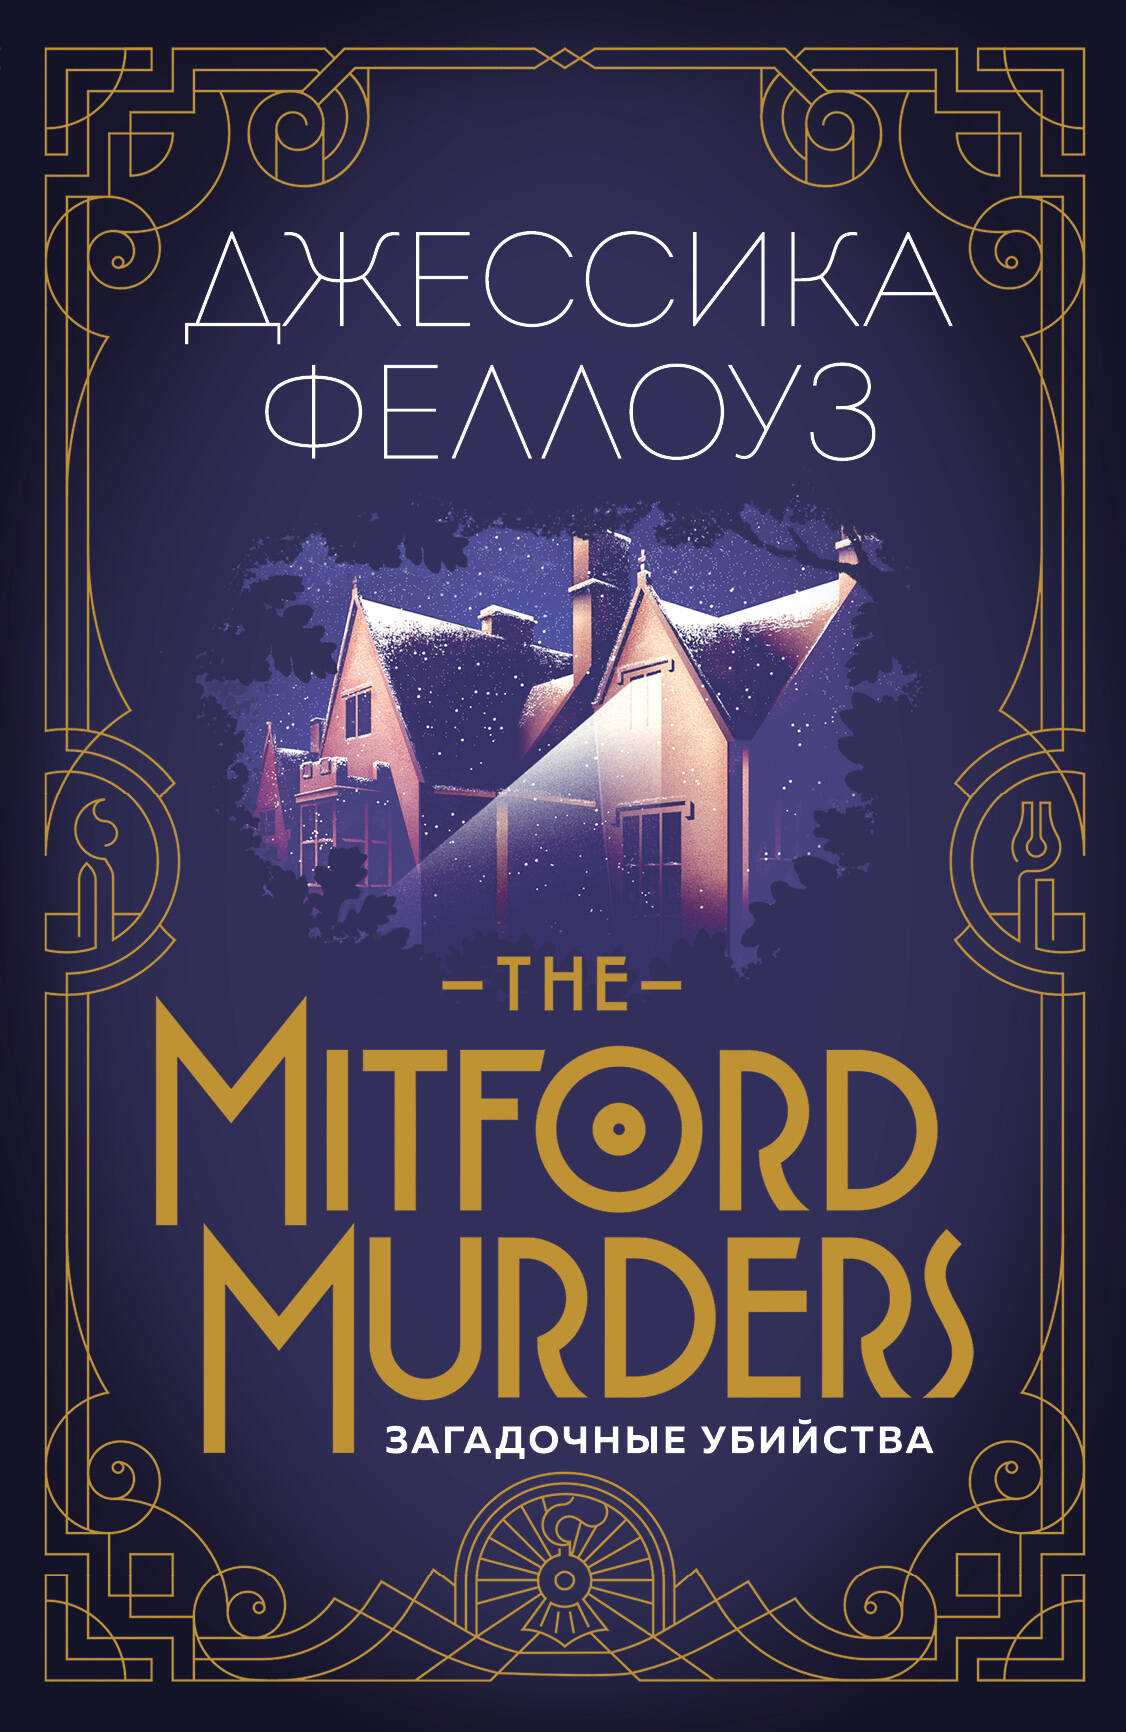 Феллоуз Джессика The Mitford murders. Загадочные убийства феллоуз джулиан снобы роман